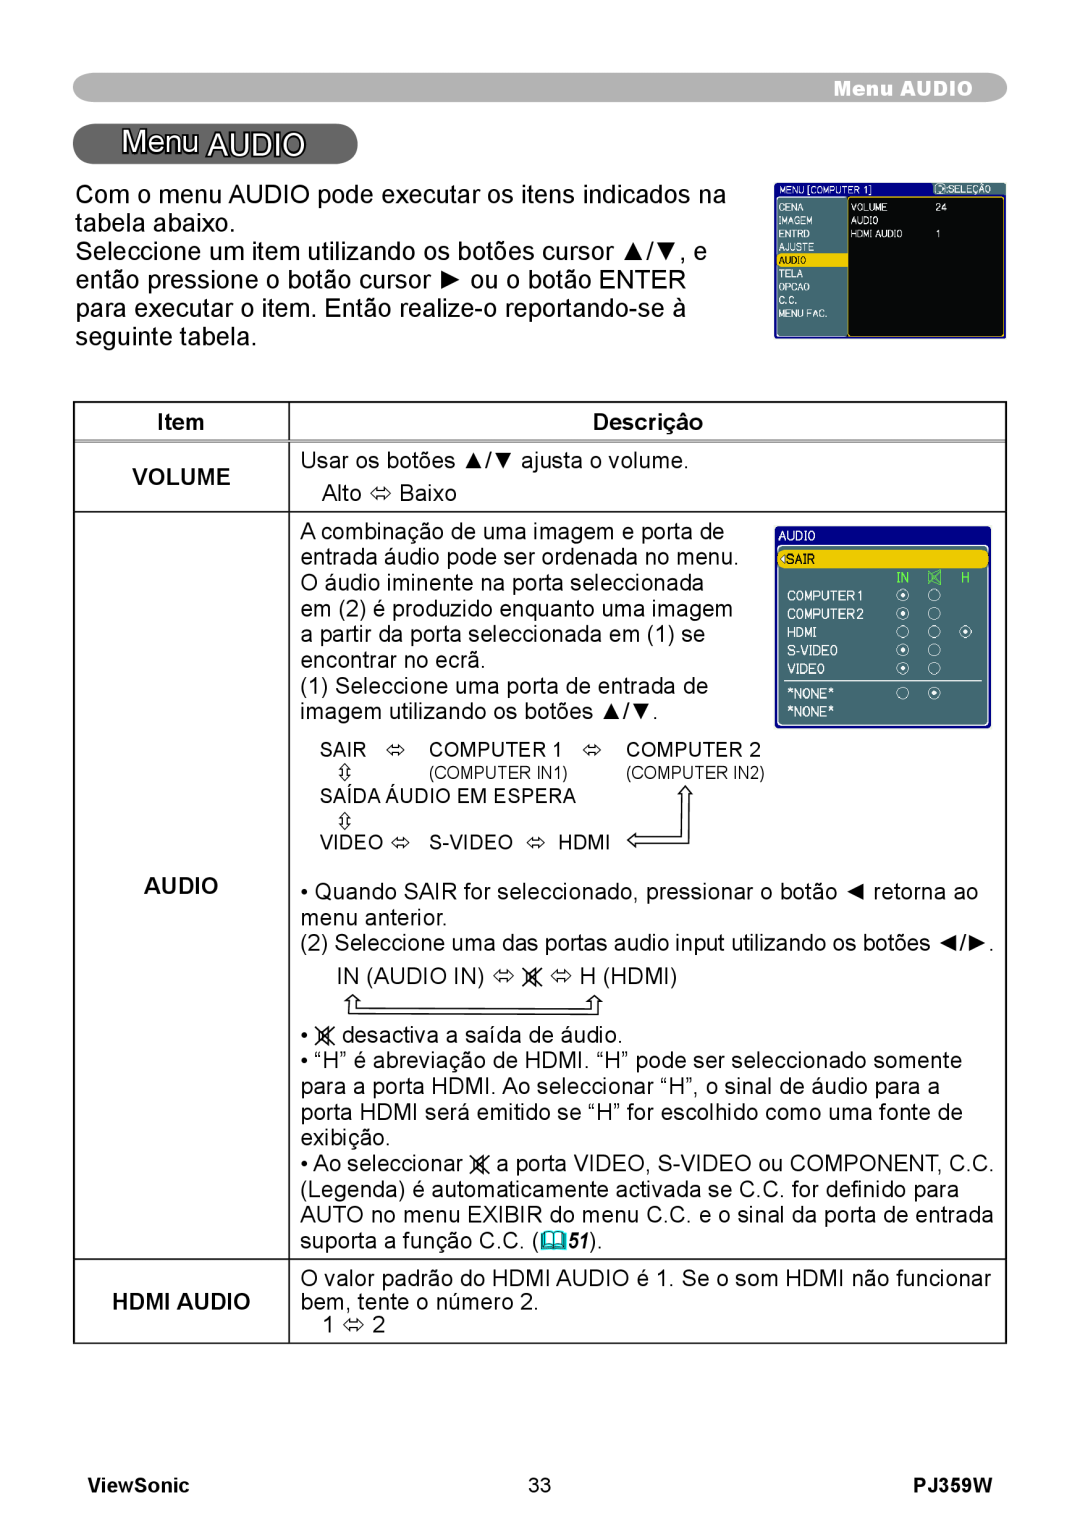 ViewSonic PJ359 manual Menu AUDIO, Descriçâo, Volume, Usar os botões / ajusta o volume, Alto ó Baixo, Hdmi Audio 